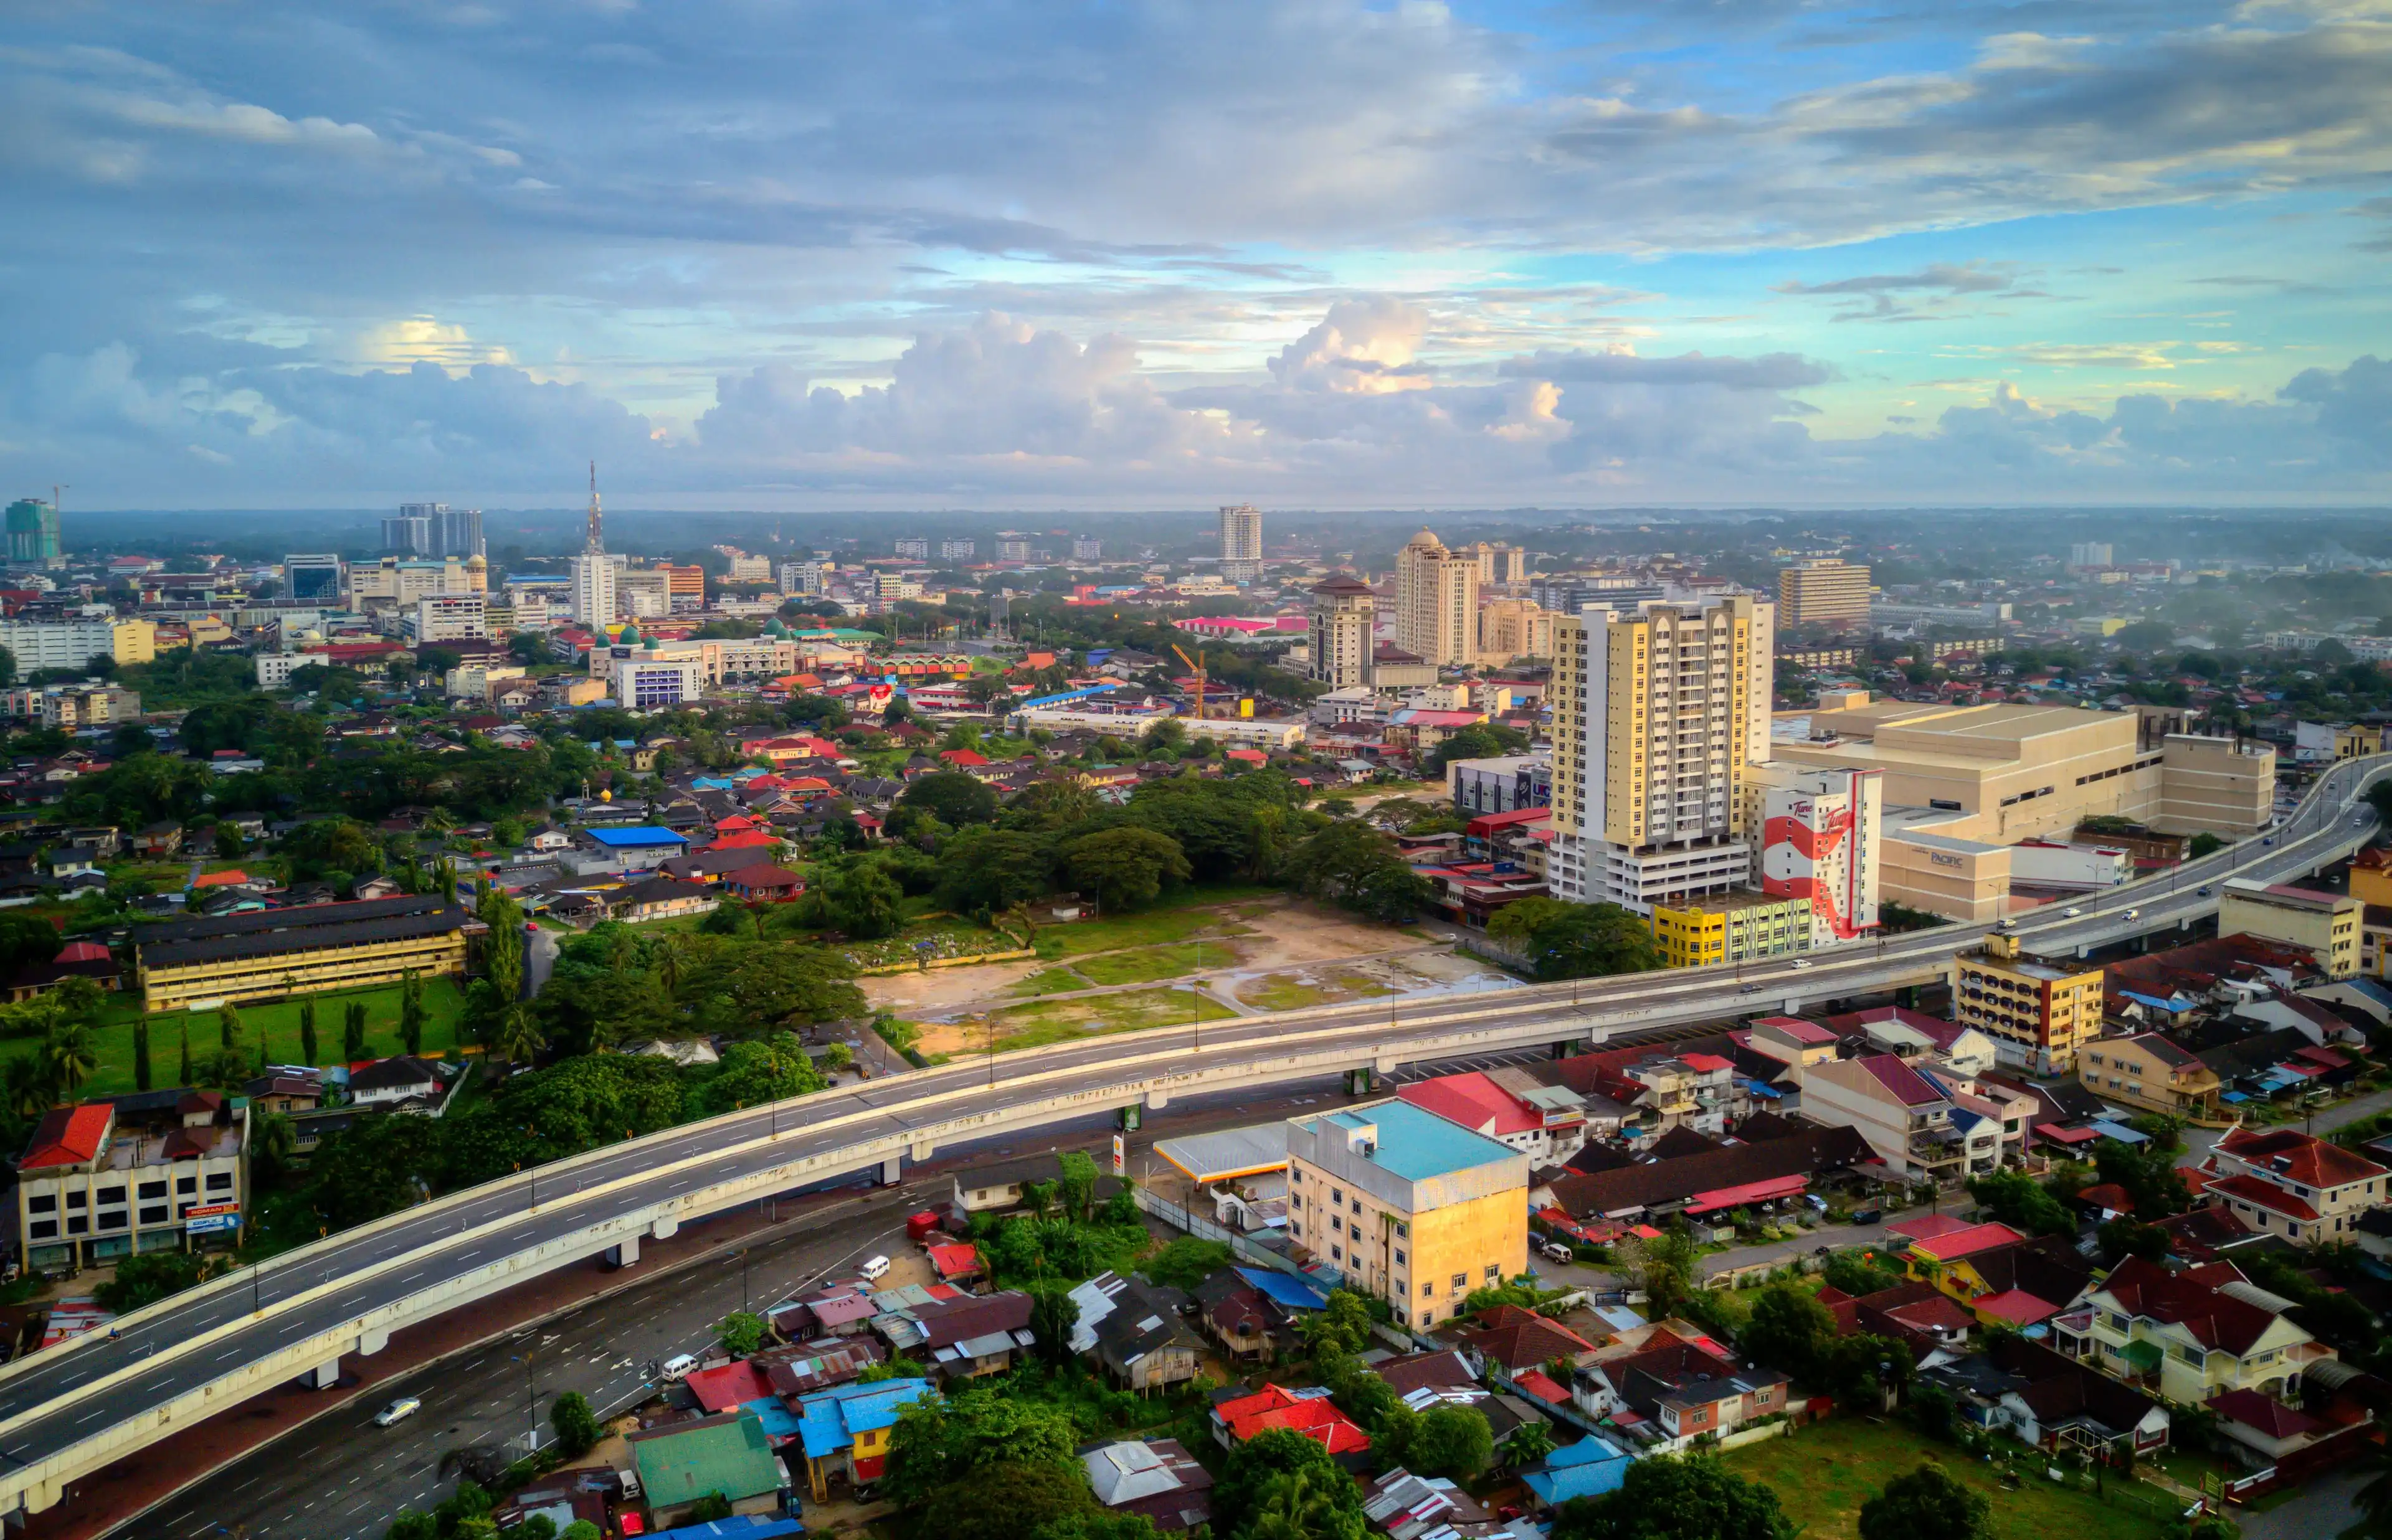 Kota Bharu , Kelantan , Malaysia 4th December 2017 - Aerial view of Kota Bharu city in the morning